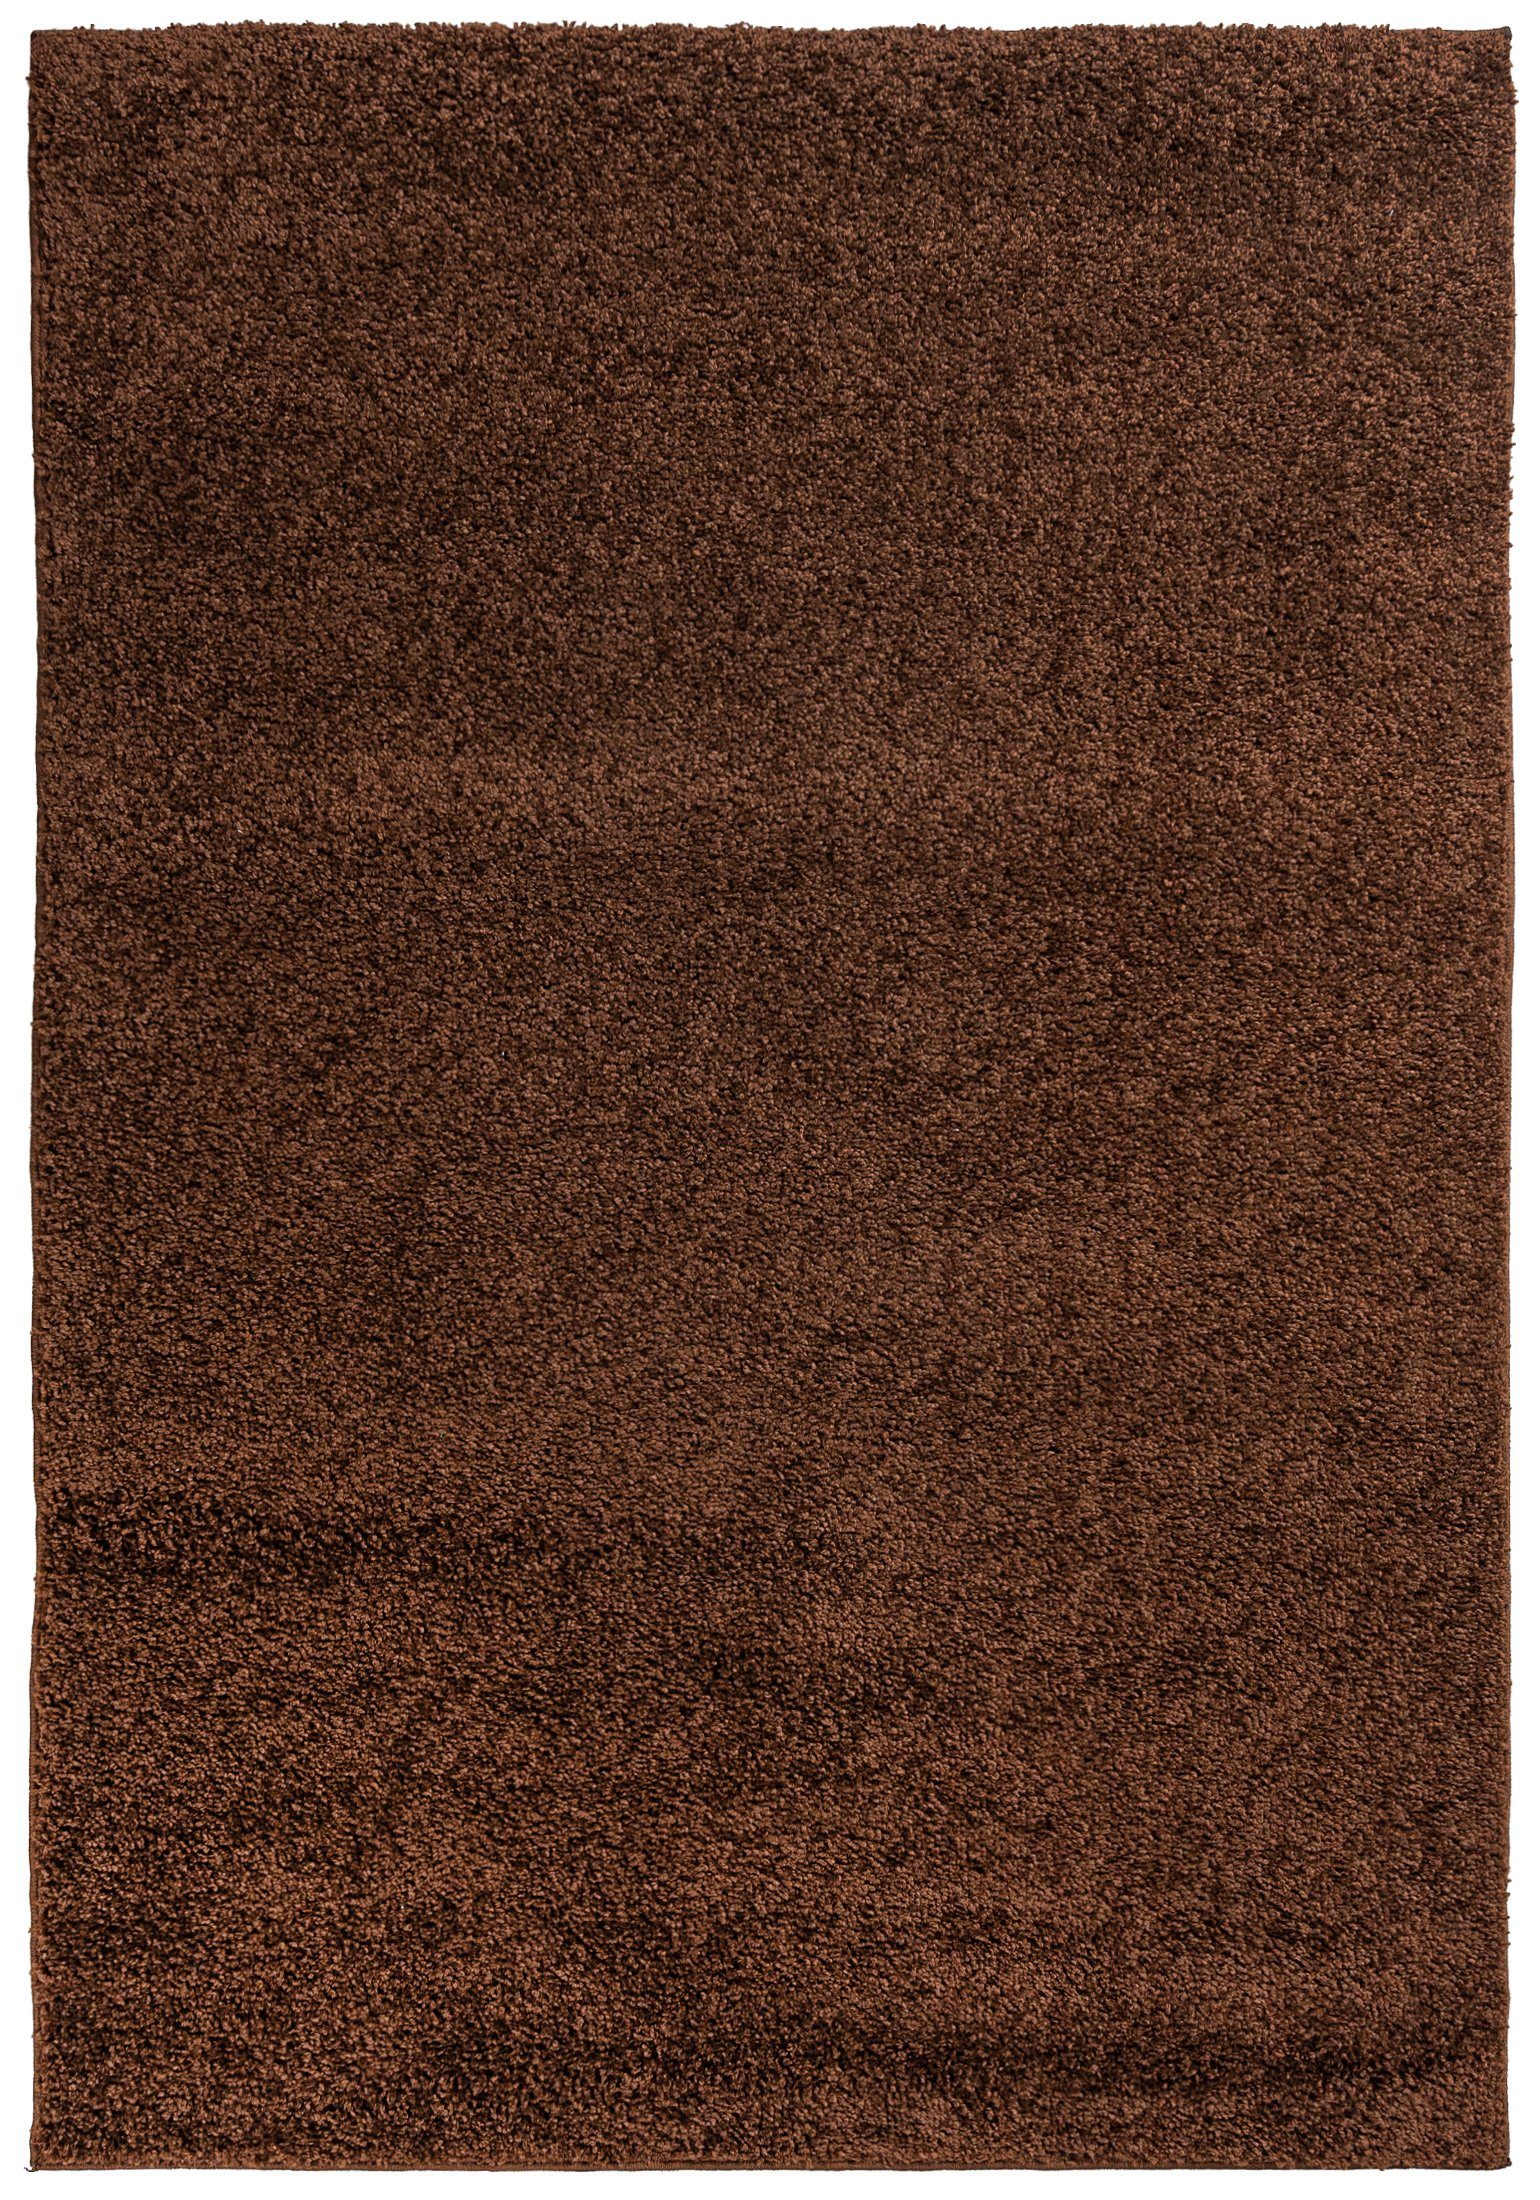 Hochflor-Teppich Hochflor Shaggy Teppich für Wohnzimmer - Höhe 30 mm Braun, Mazovia, 60 x 100 cm, Pflegeleicht, Einfarbig Uni, Langflor, Rechteckig, Weich